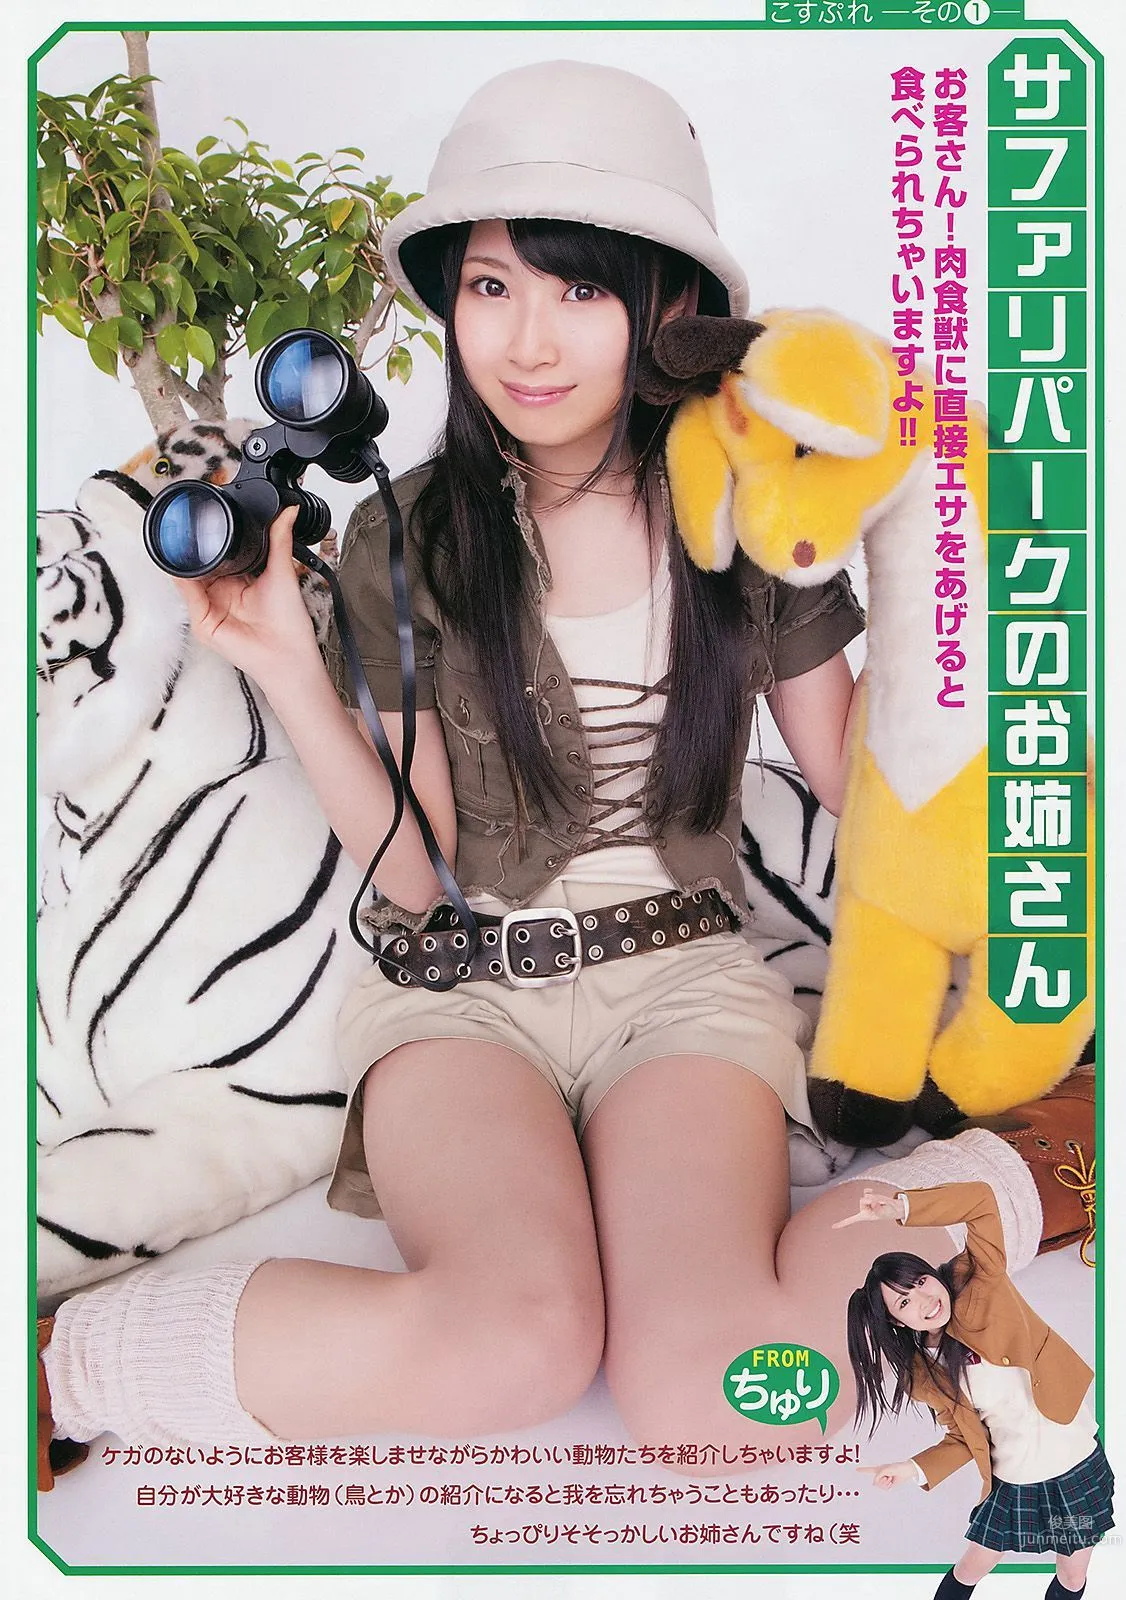 高柳明音 SKE48 藤井シェリー 麻倉憂 神咲詩織 [Young Animal] 2011年No.11 写真杂志3